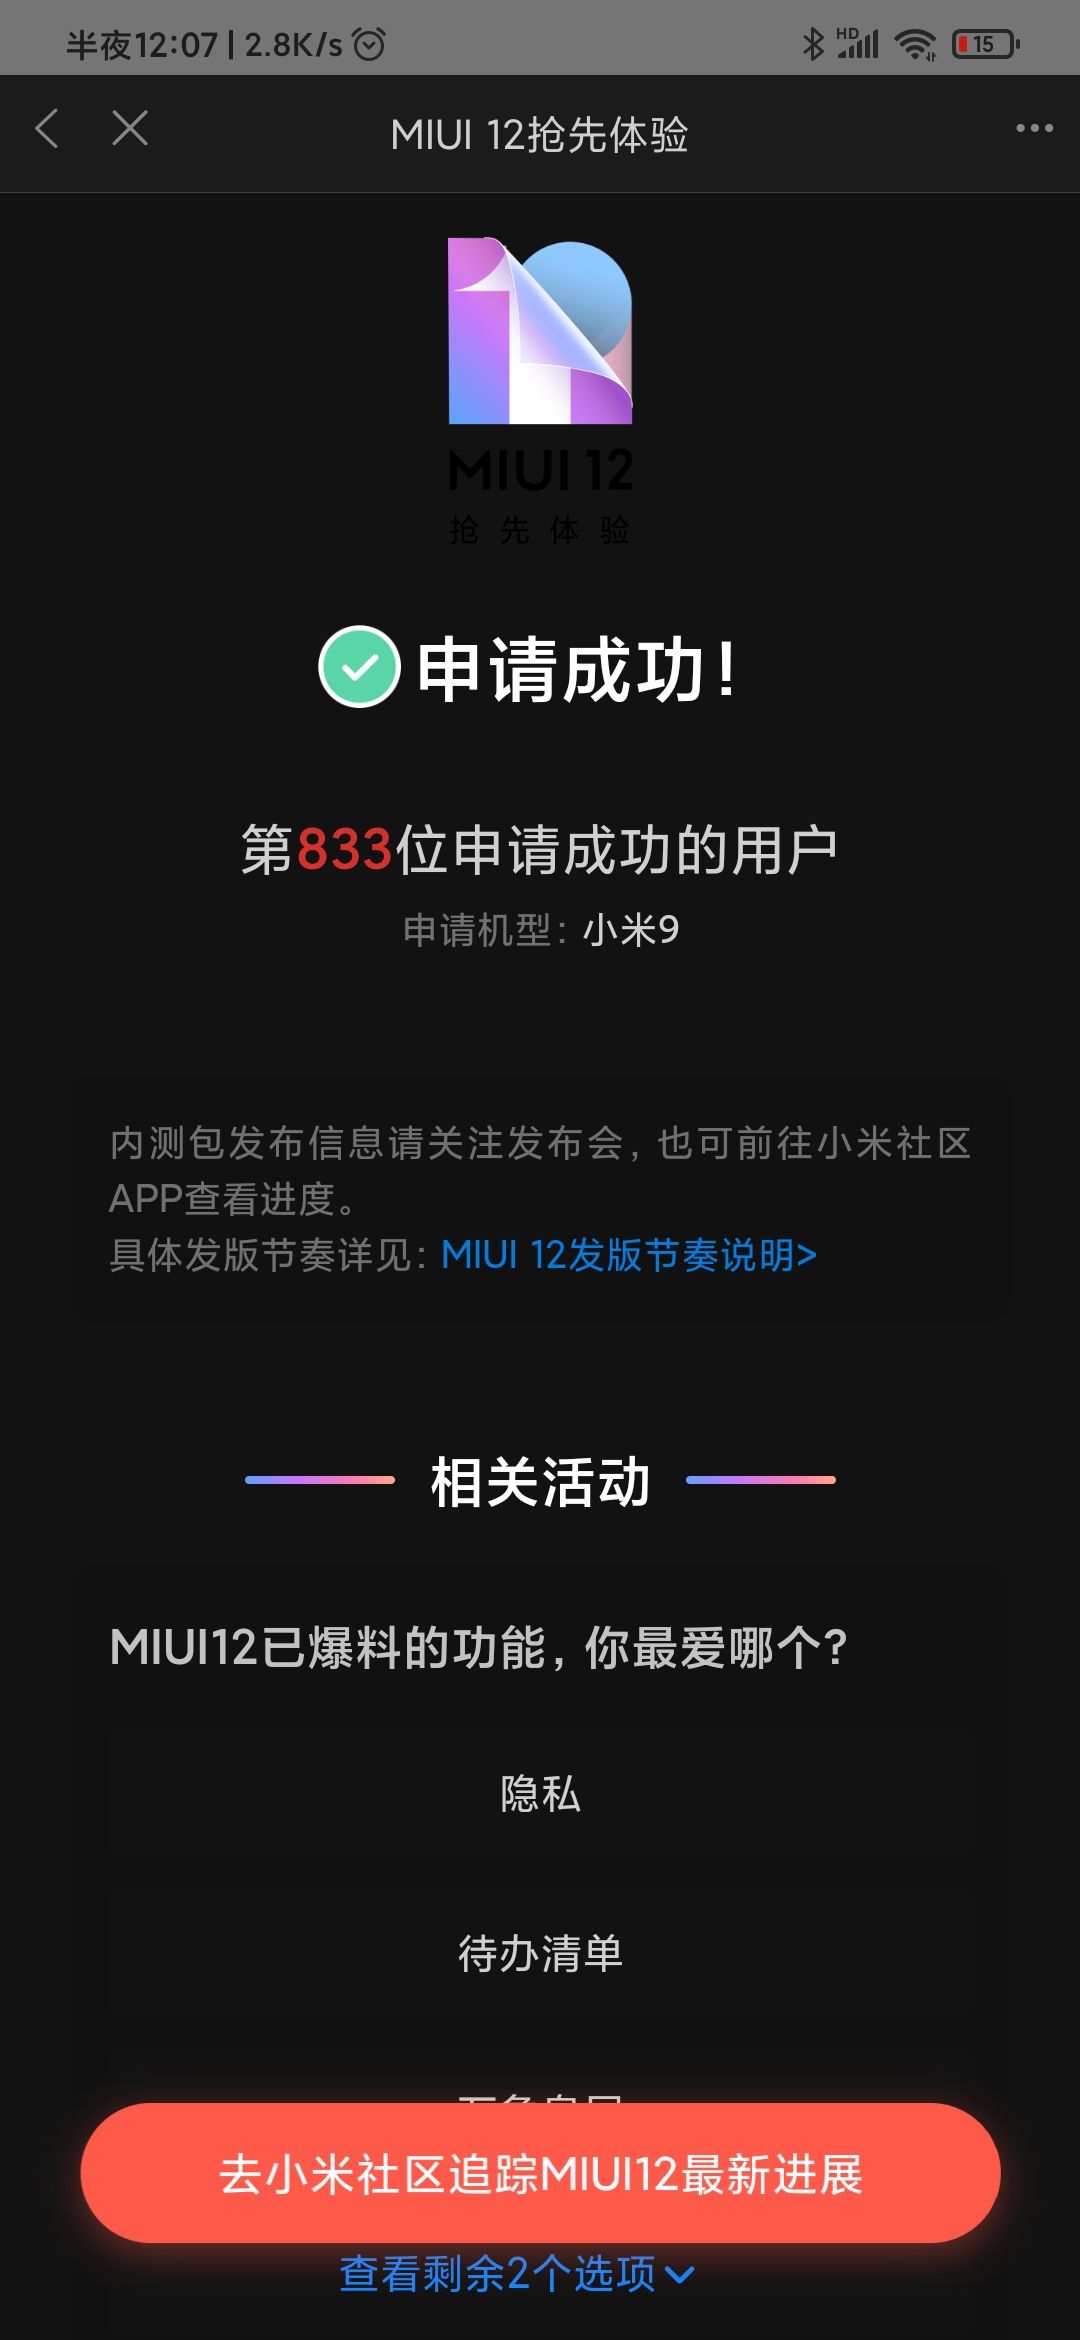 miui12声音调节助手app官方最新版 v1.0.0截图